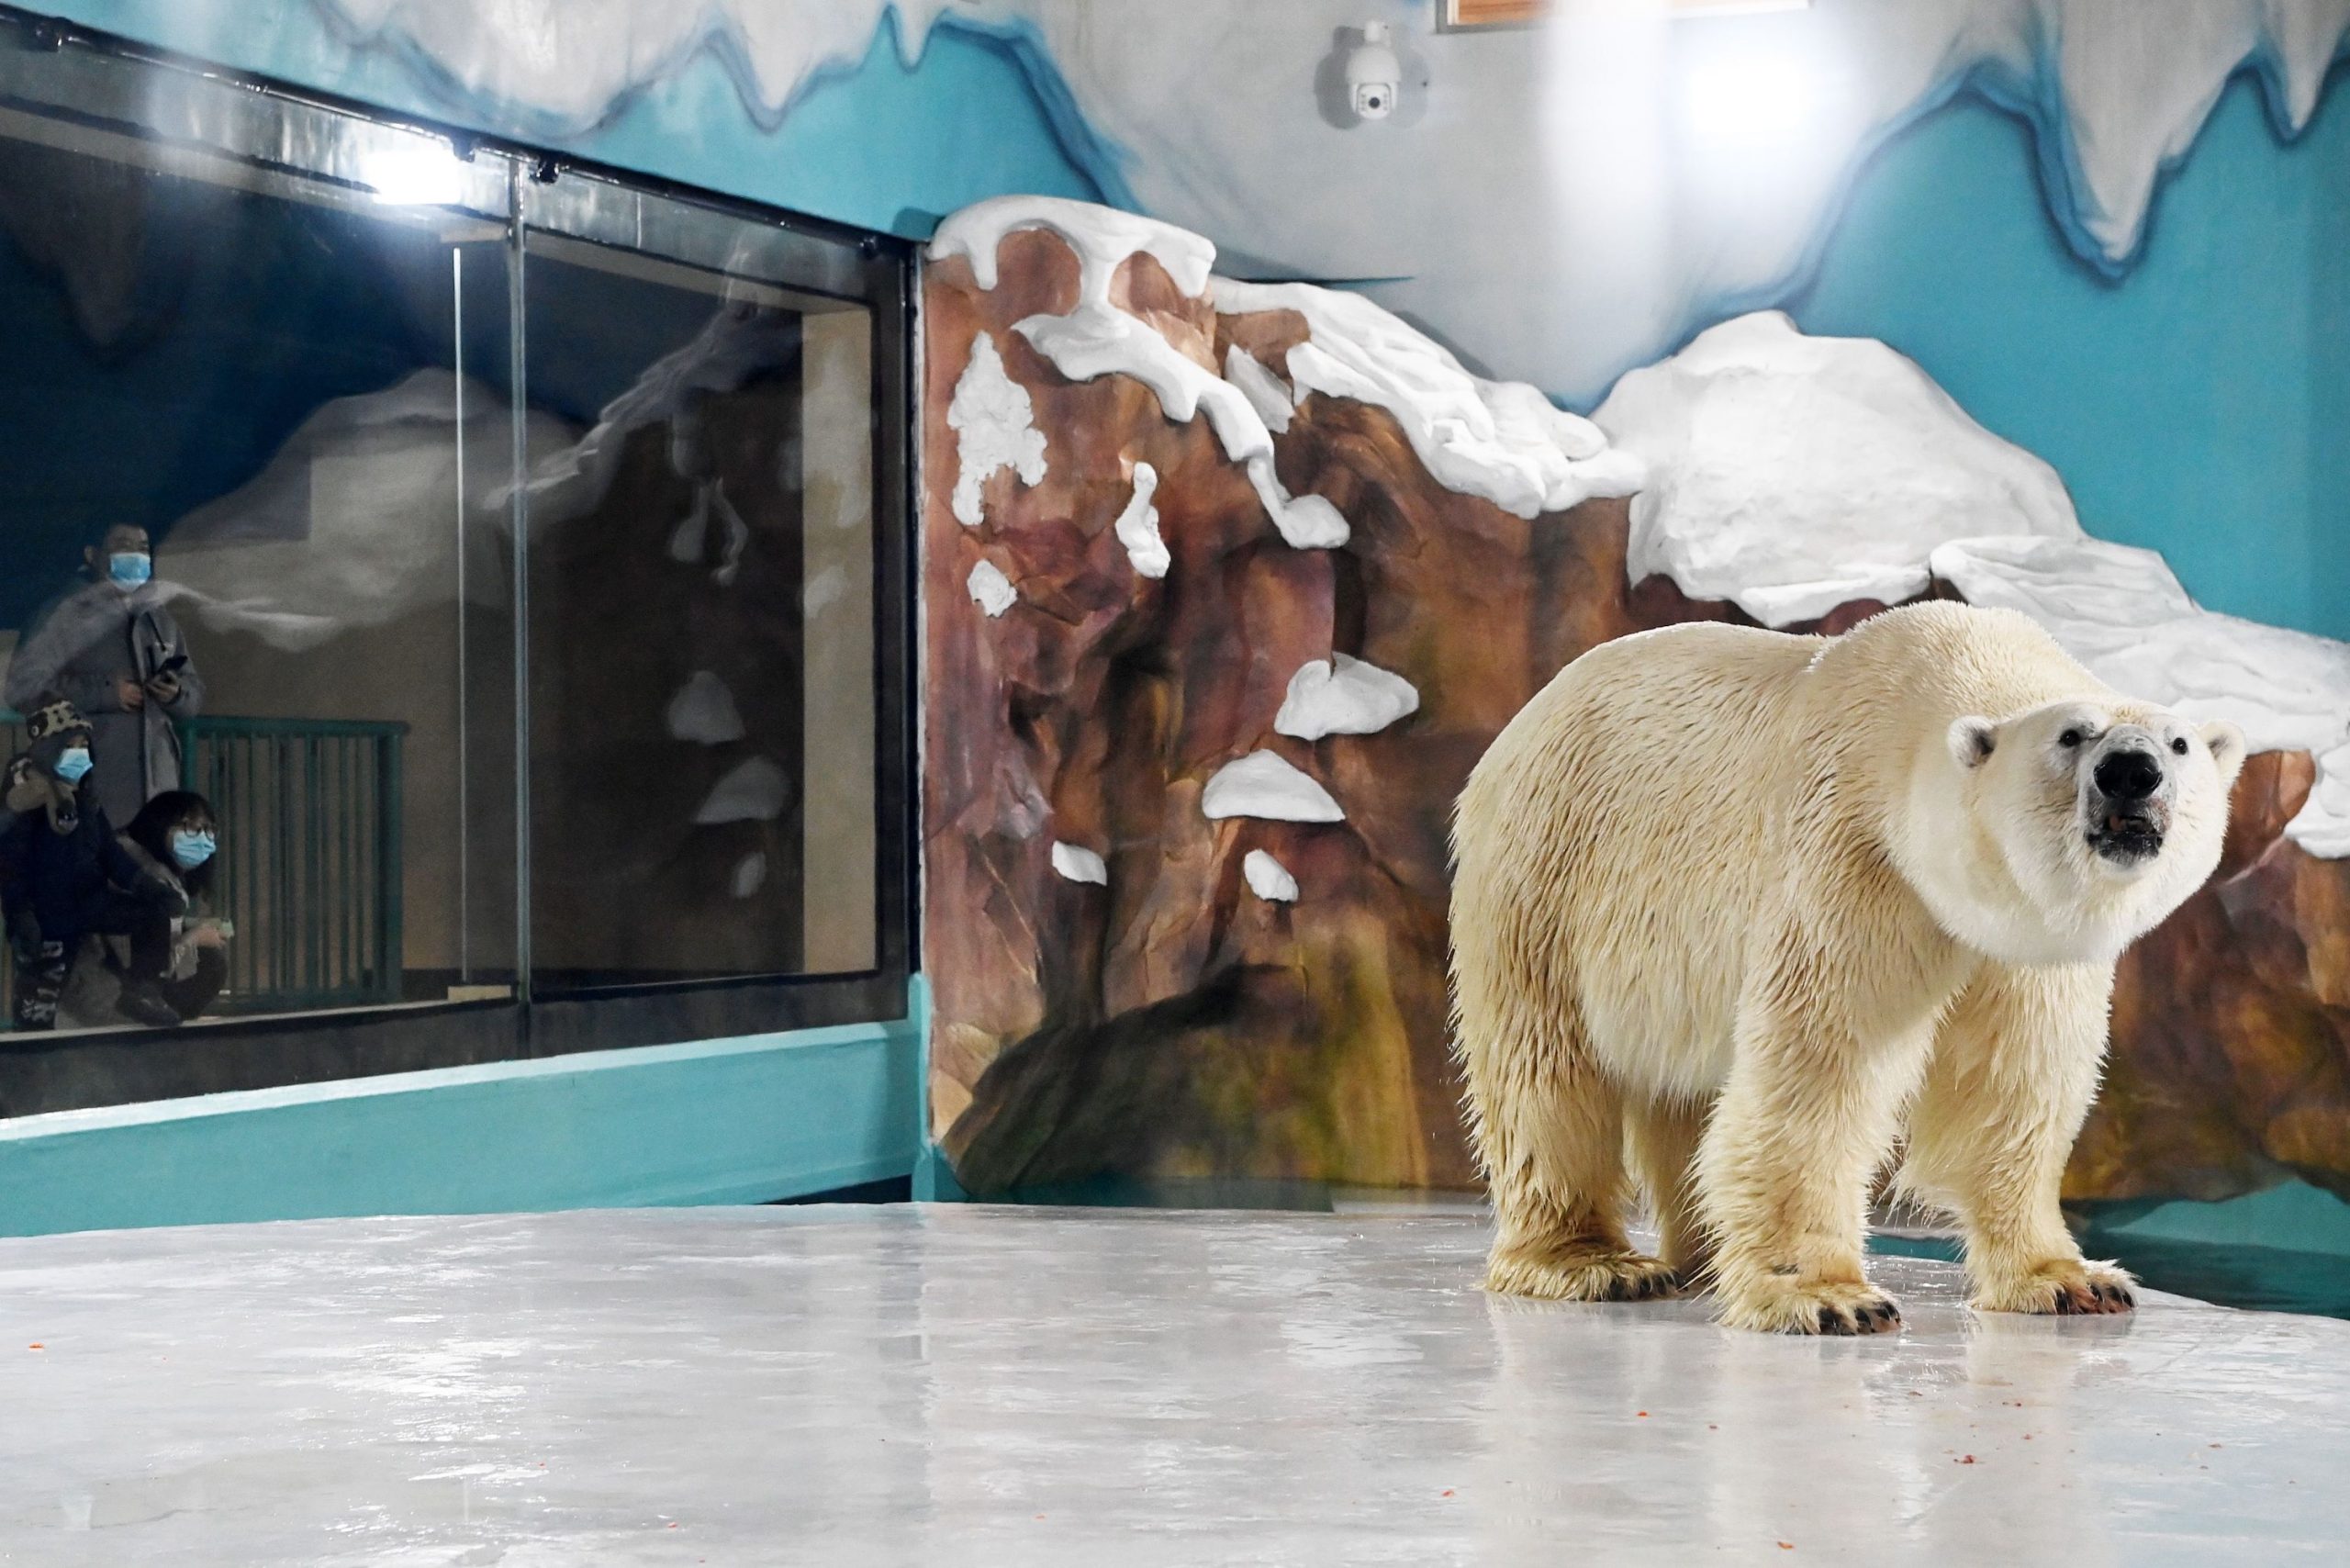 In Cina apre (tra le polemiche) un hotel popolato da orsi polari